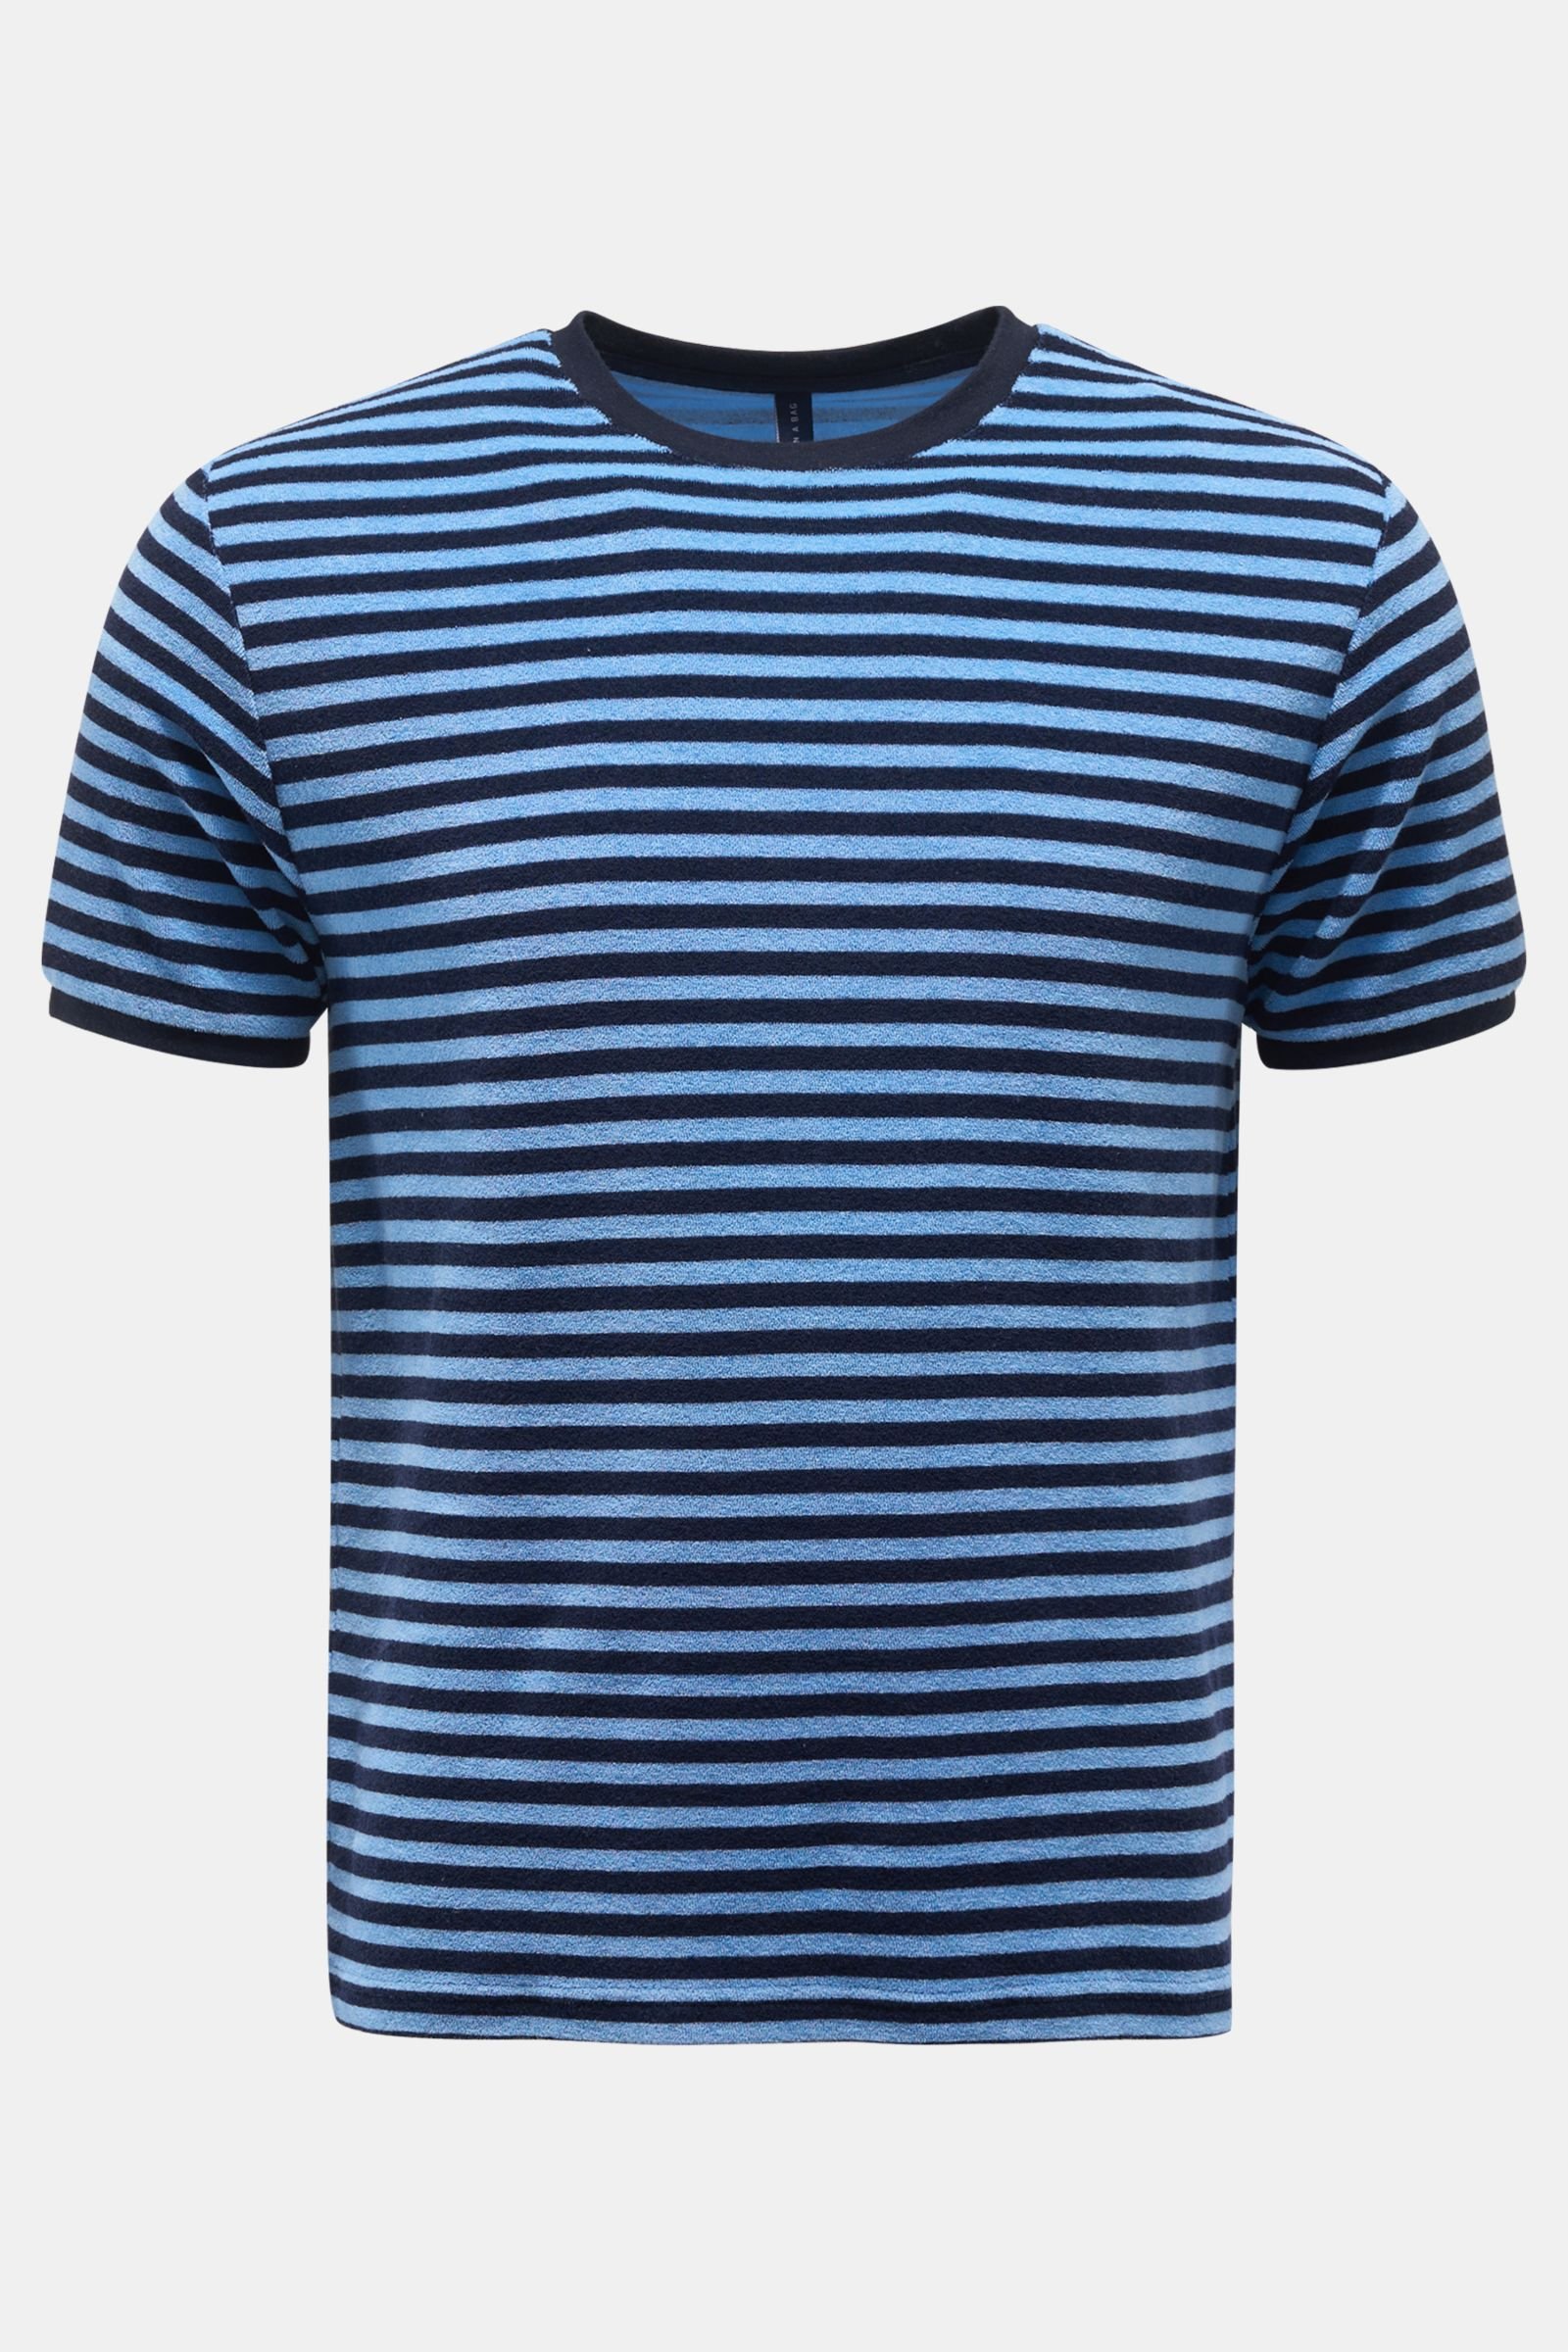 Frottee Rundhals-T-Shirt 'Terry Stripe Tee' hellblau/schwarz gestreift